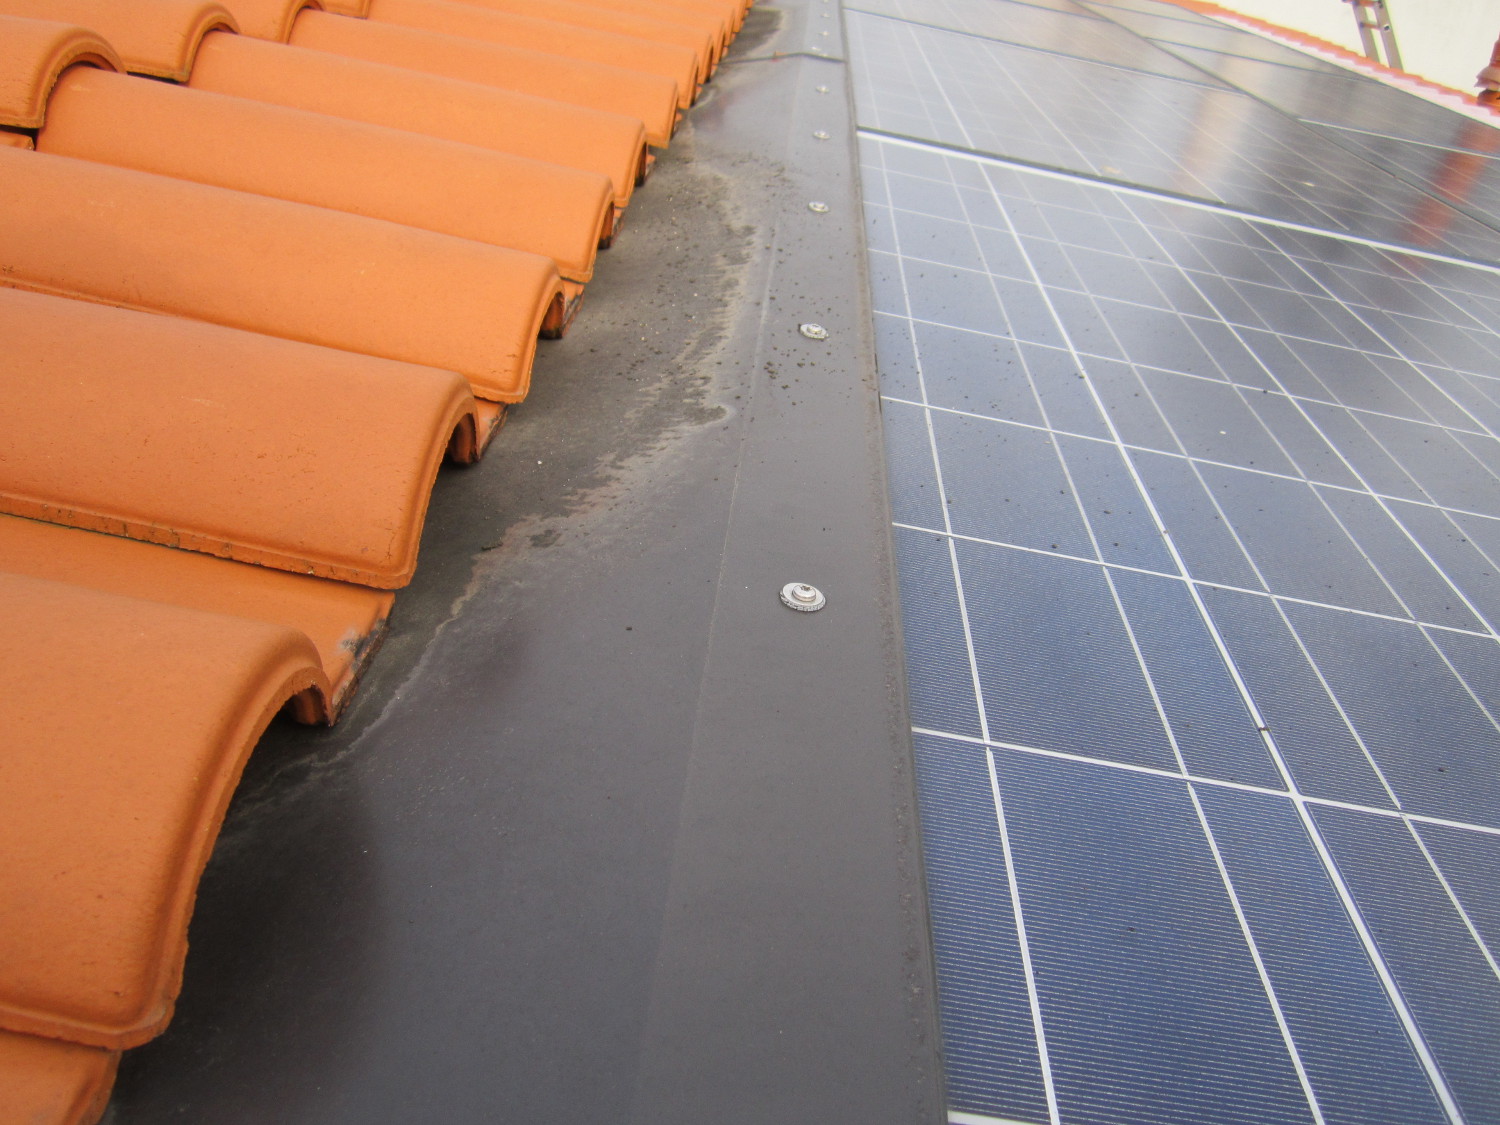 Réparation solaire de toiture photovoltaique